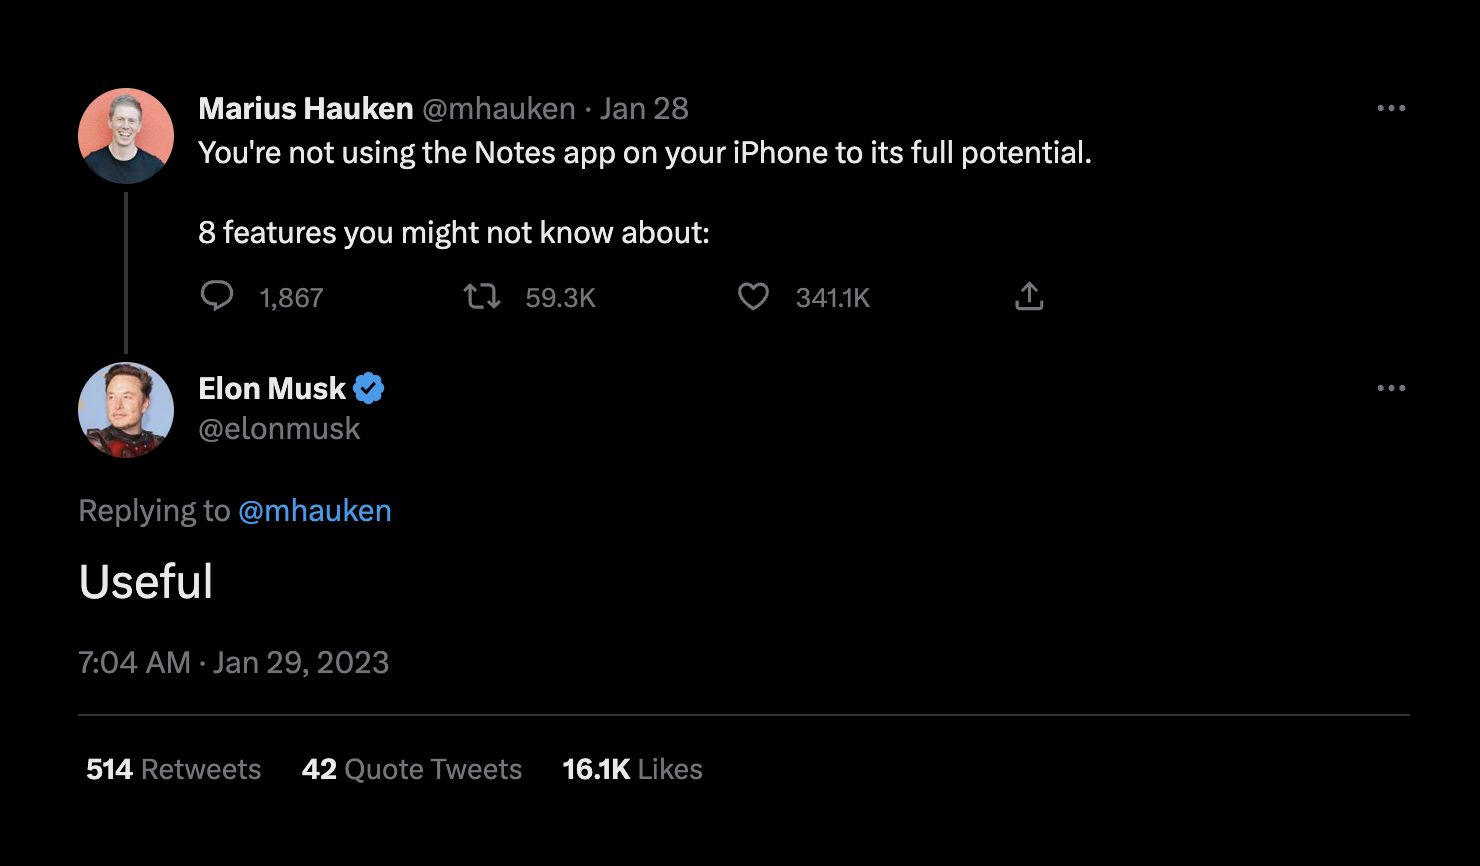 Elon musk replied: Useful